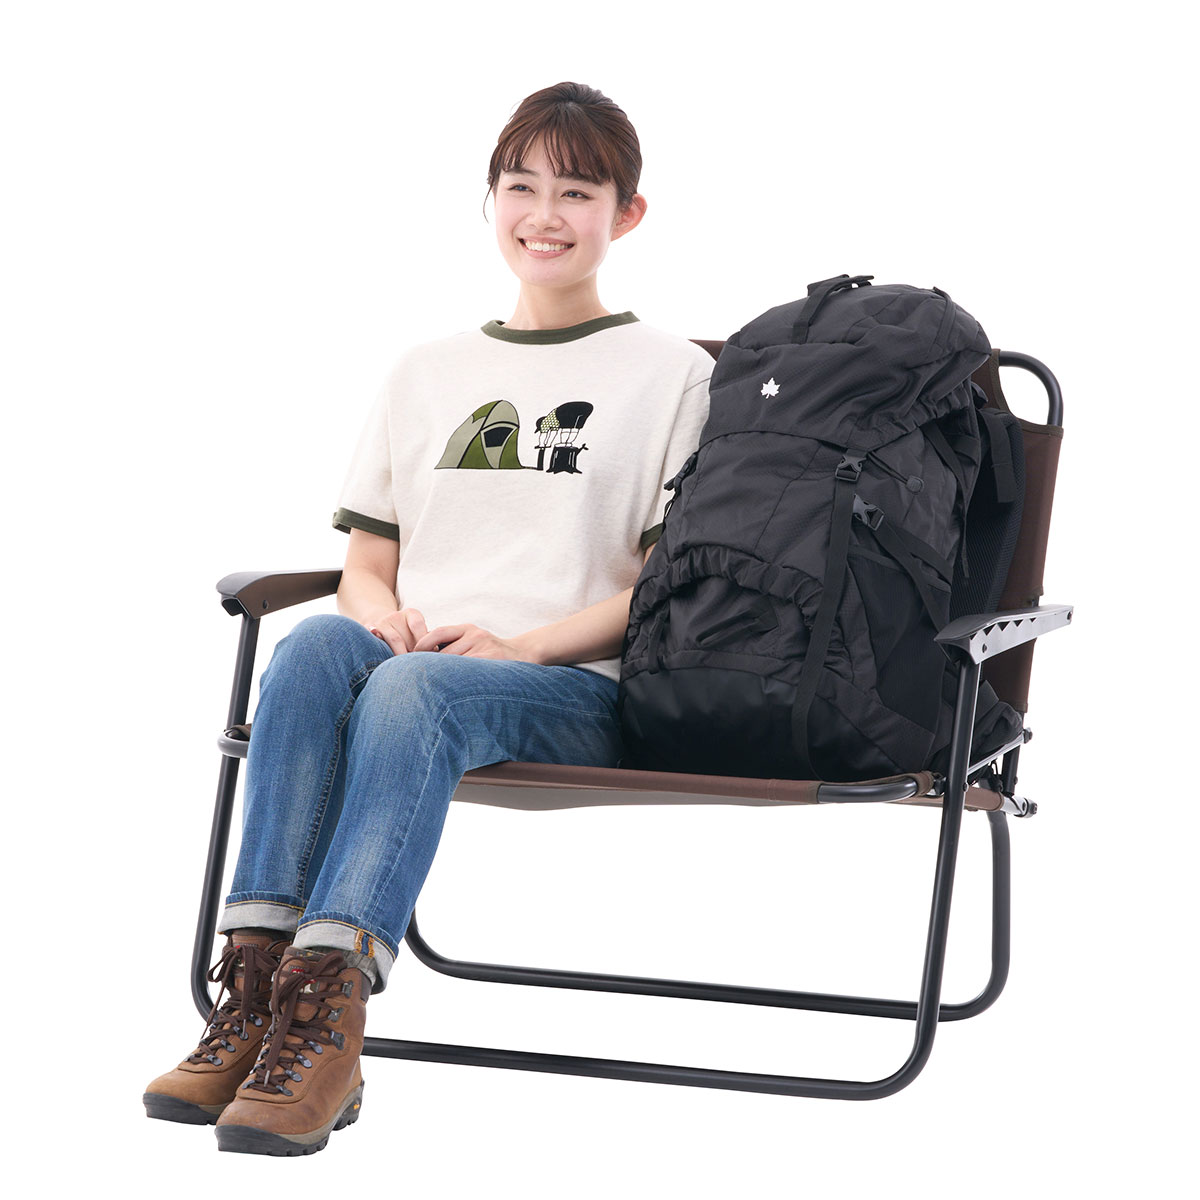 アースアイアンローチェア for OYAKO|ギア|家具|椅子・ベンチ|製品情報 